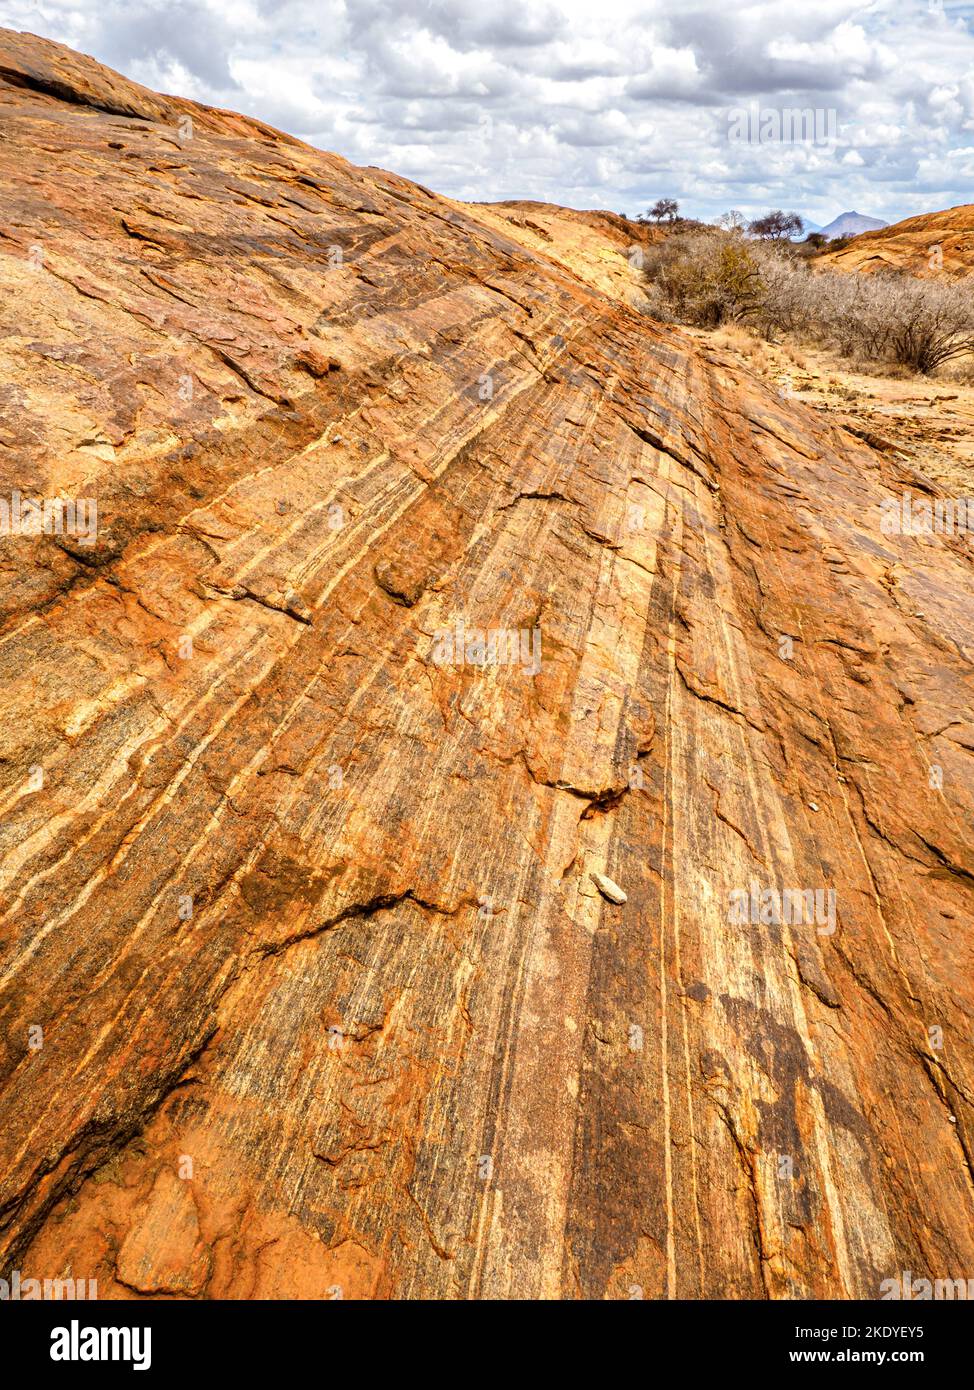 Mudanda Rock im Tsavo East National Park ist ein 1,5 km langer präkambrianischer Inselberg aus kristallinen metamorphen Gesteinen, der aus der Ndara-Ebene in Kenia aufsteigt Stockfoto